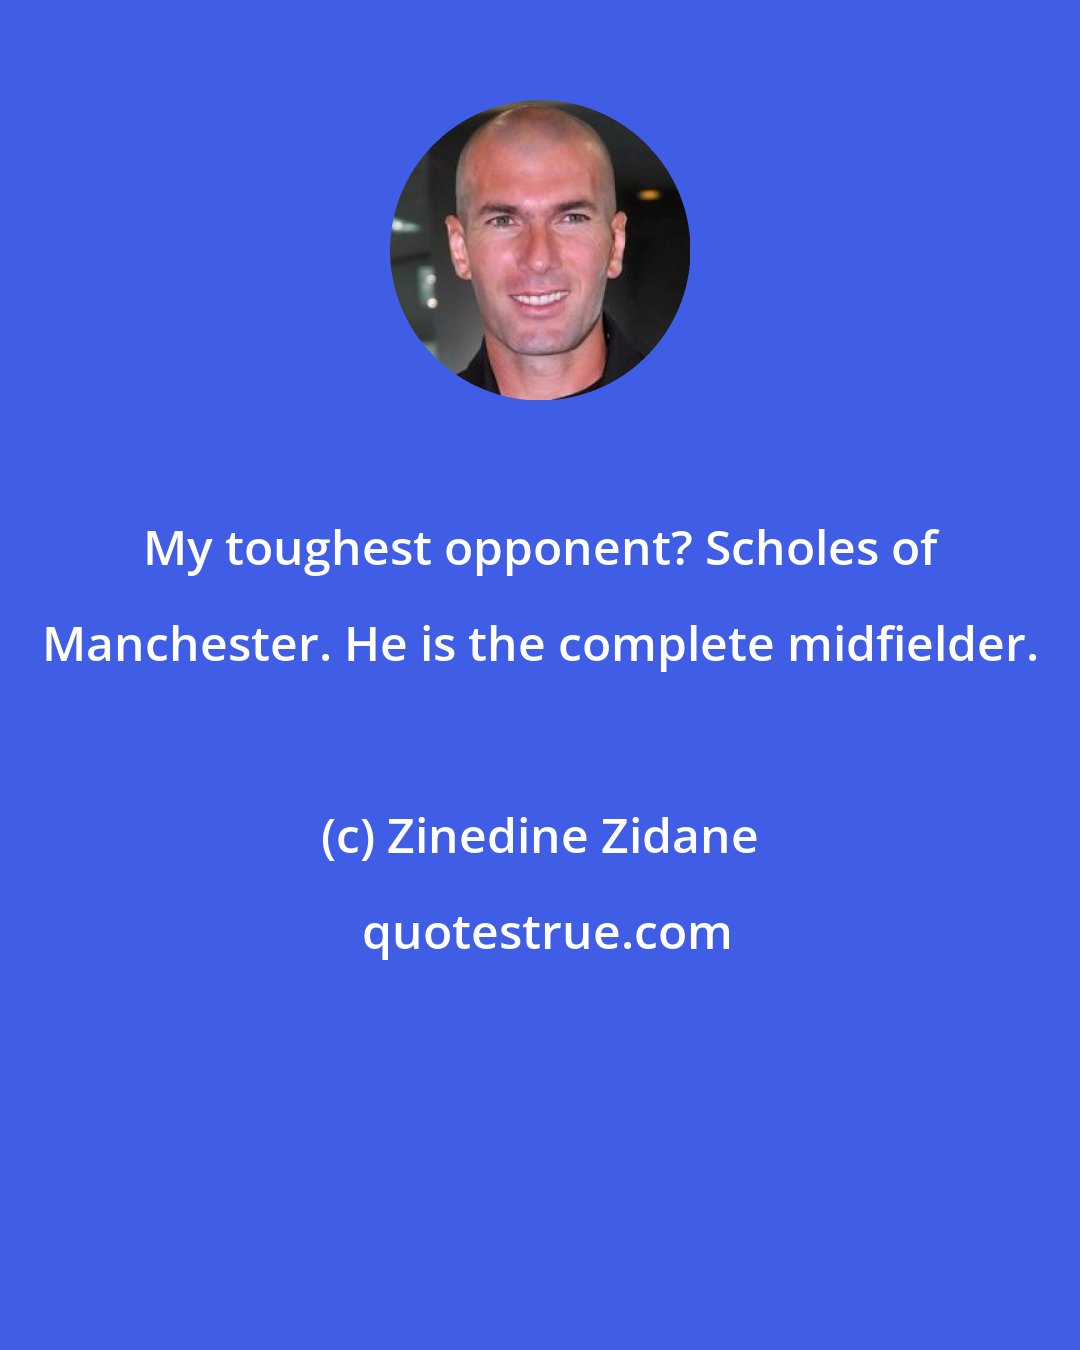 Zinedine Zidane: My toughest opponent? Scholes of Manchester. He is the complete midfielder.